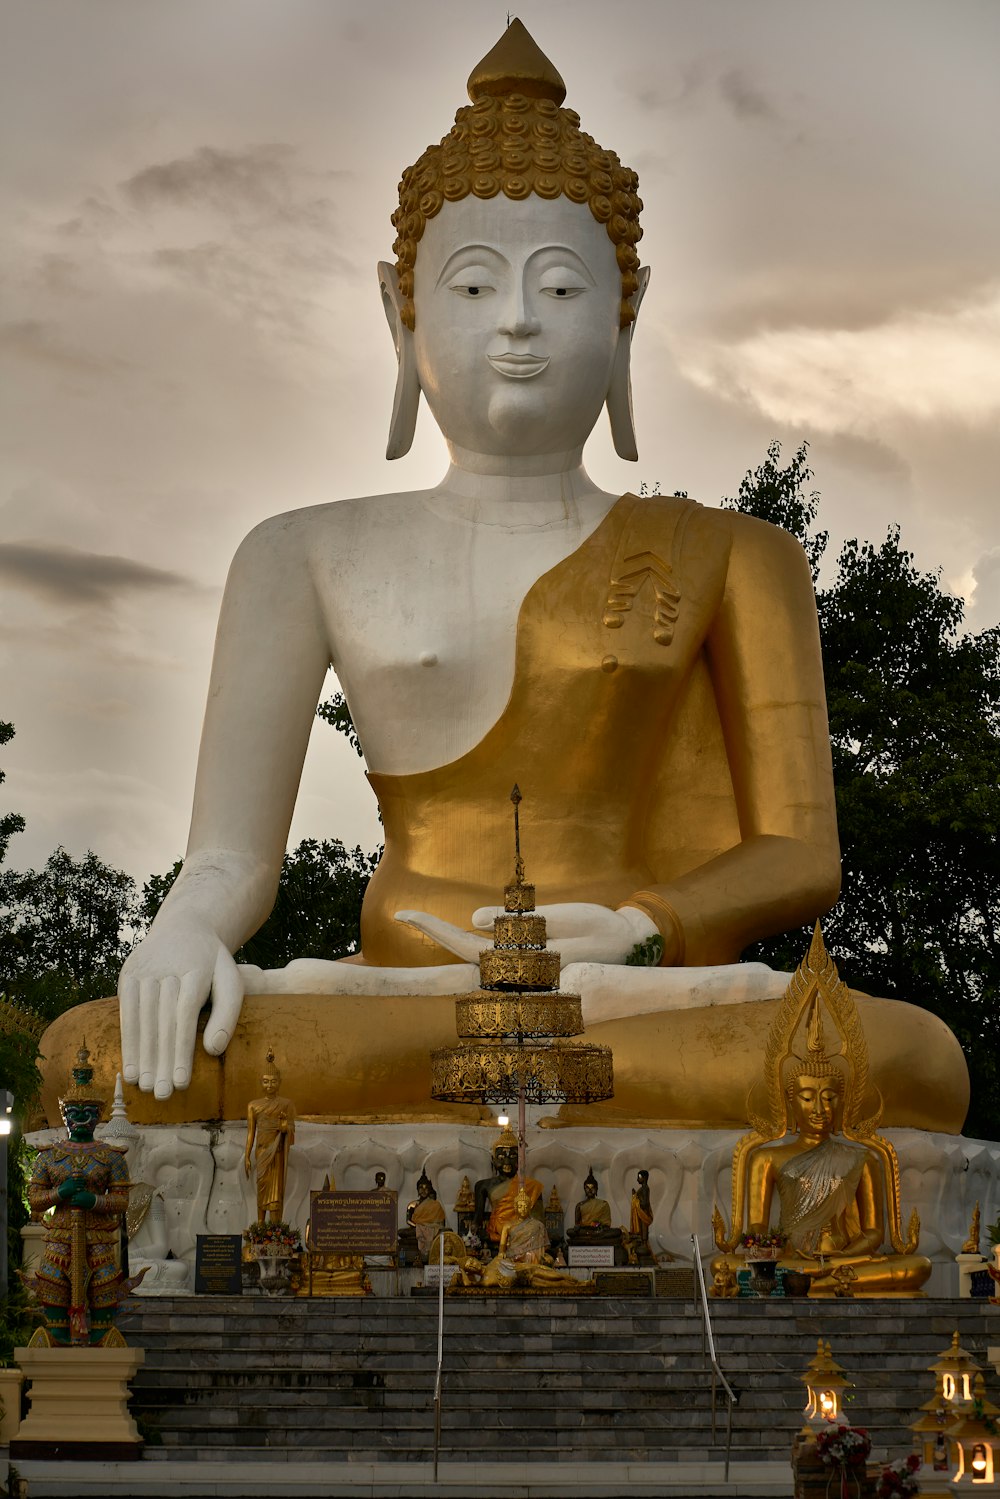 Eine große goldene Buddha-Statue in einem Park